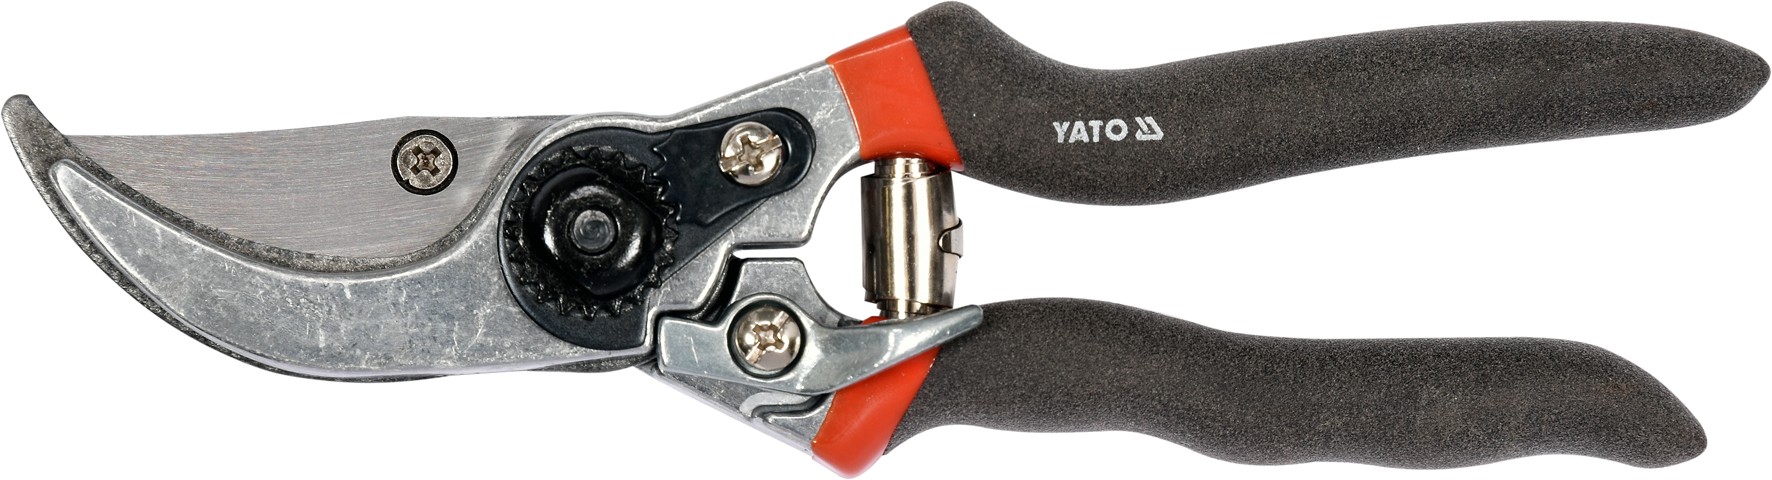 YATO Nůžky zahradnické 205mm (průměr do 15mm) šikmý stříh